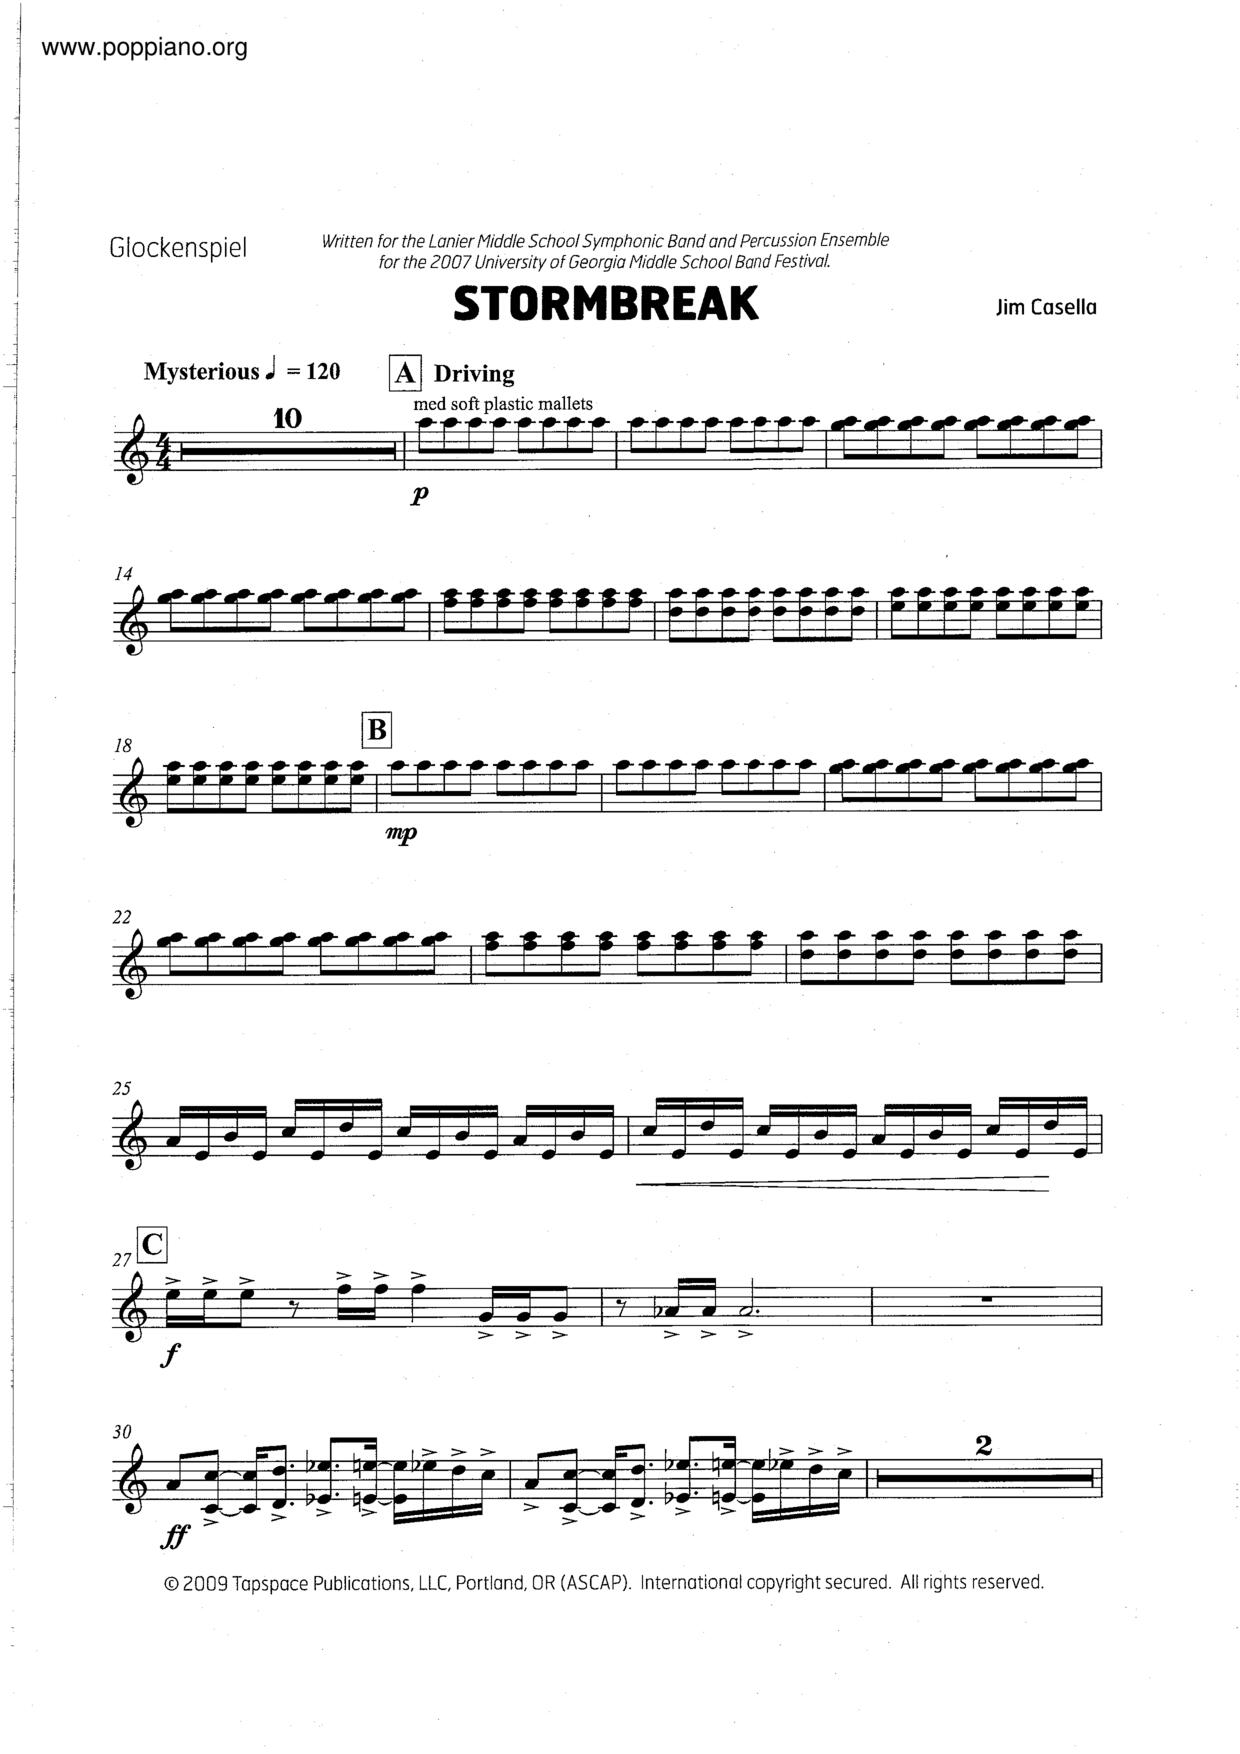 Stormbreak Score